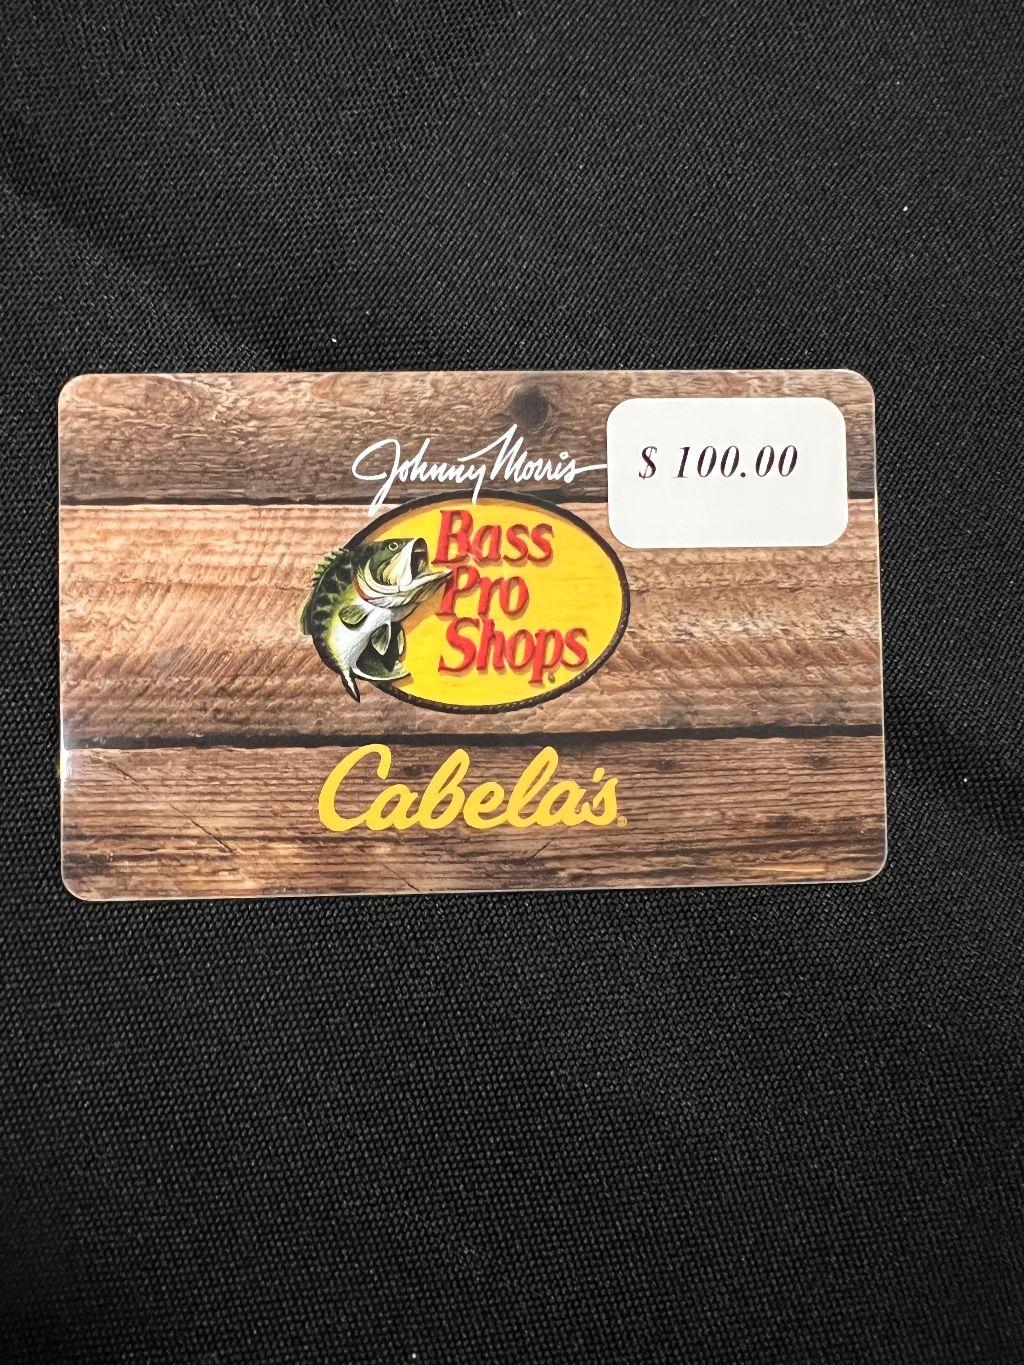 Bass Pro Shops - $100